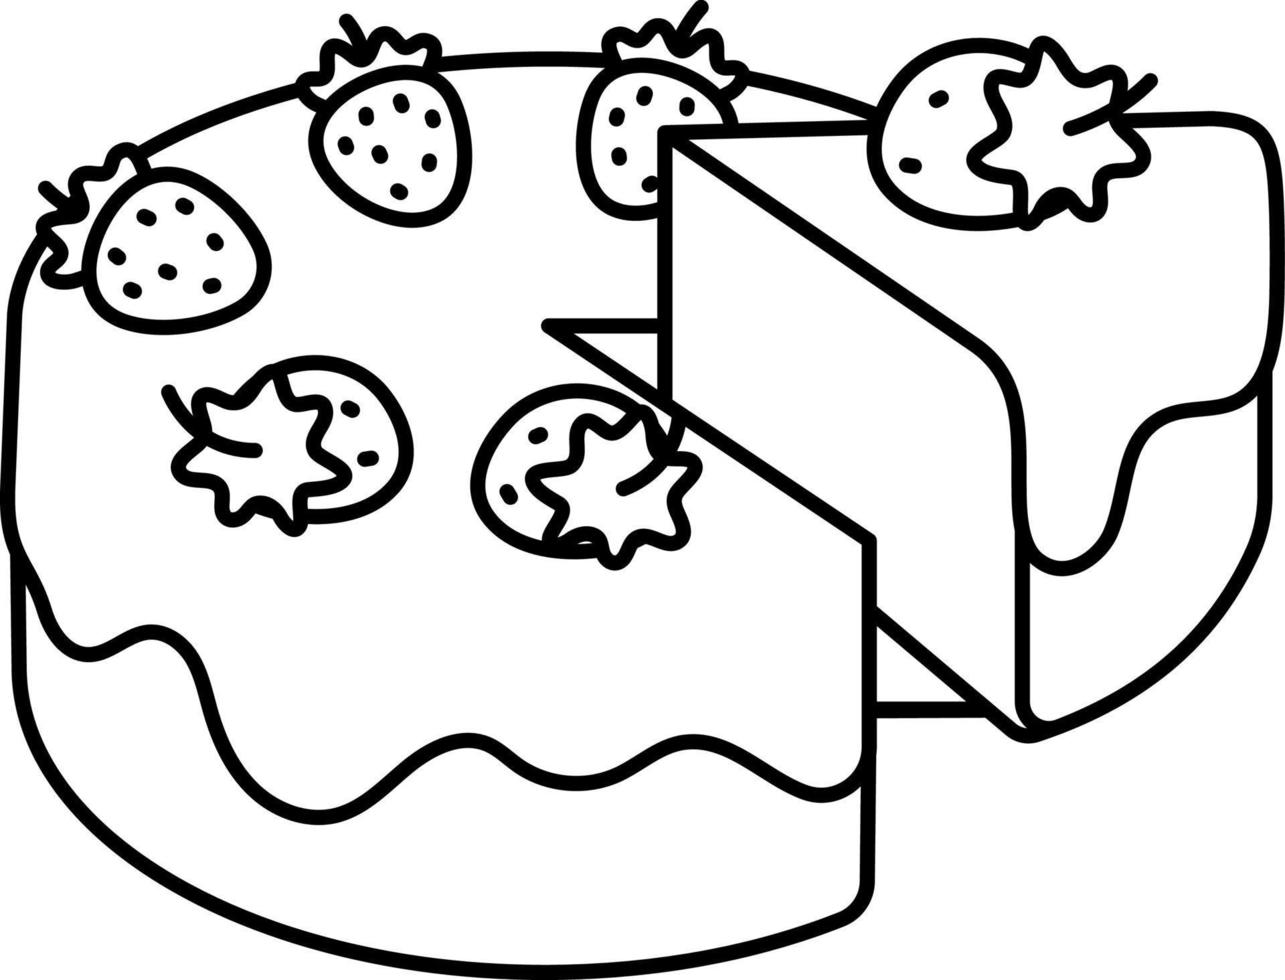 Vanille-Erdbeerkuchen wird geteilt Dessert-Symbol-Element-Illustrationslinie mit weißem Stil vektor